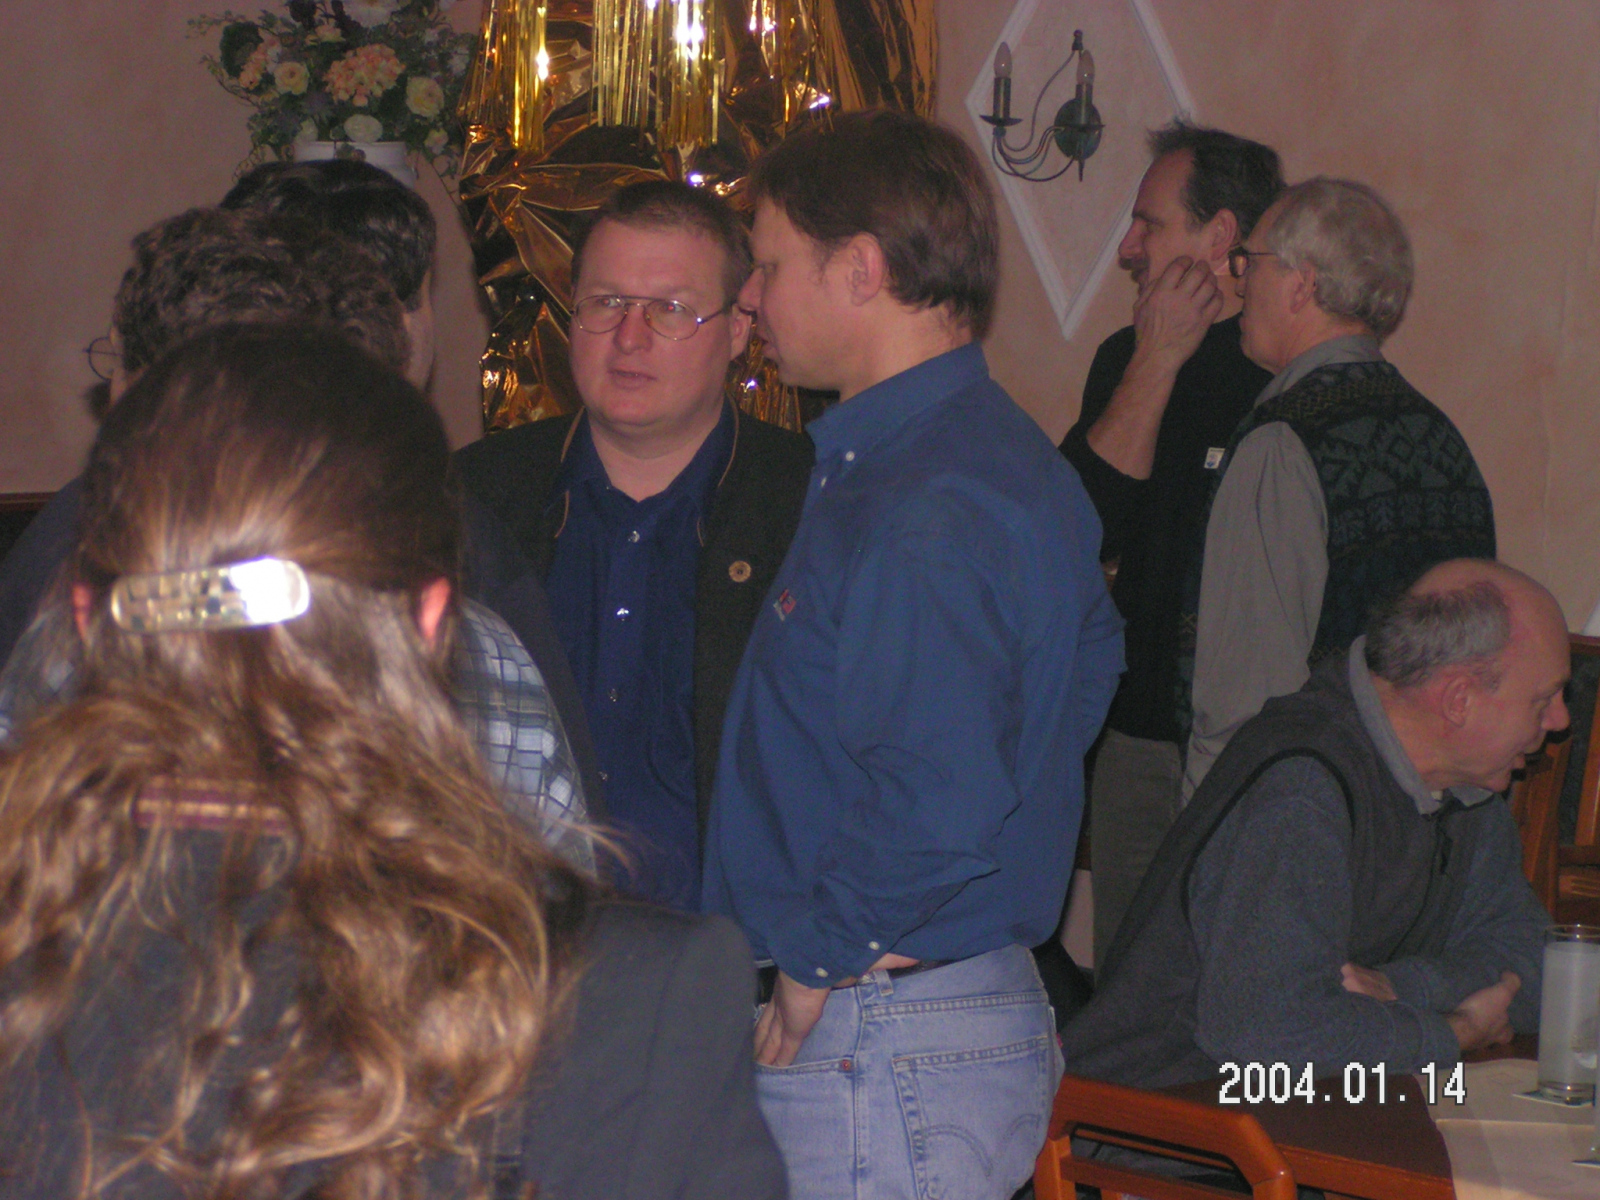 HL3K-Treffen 2006